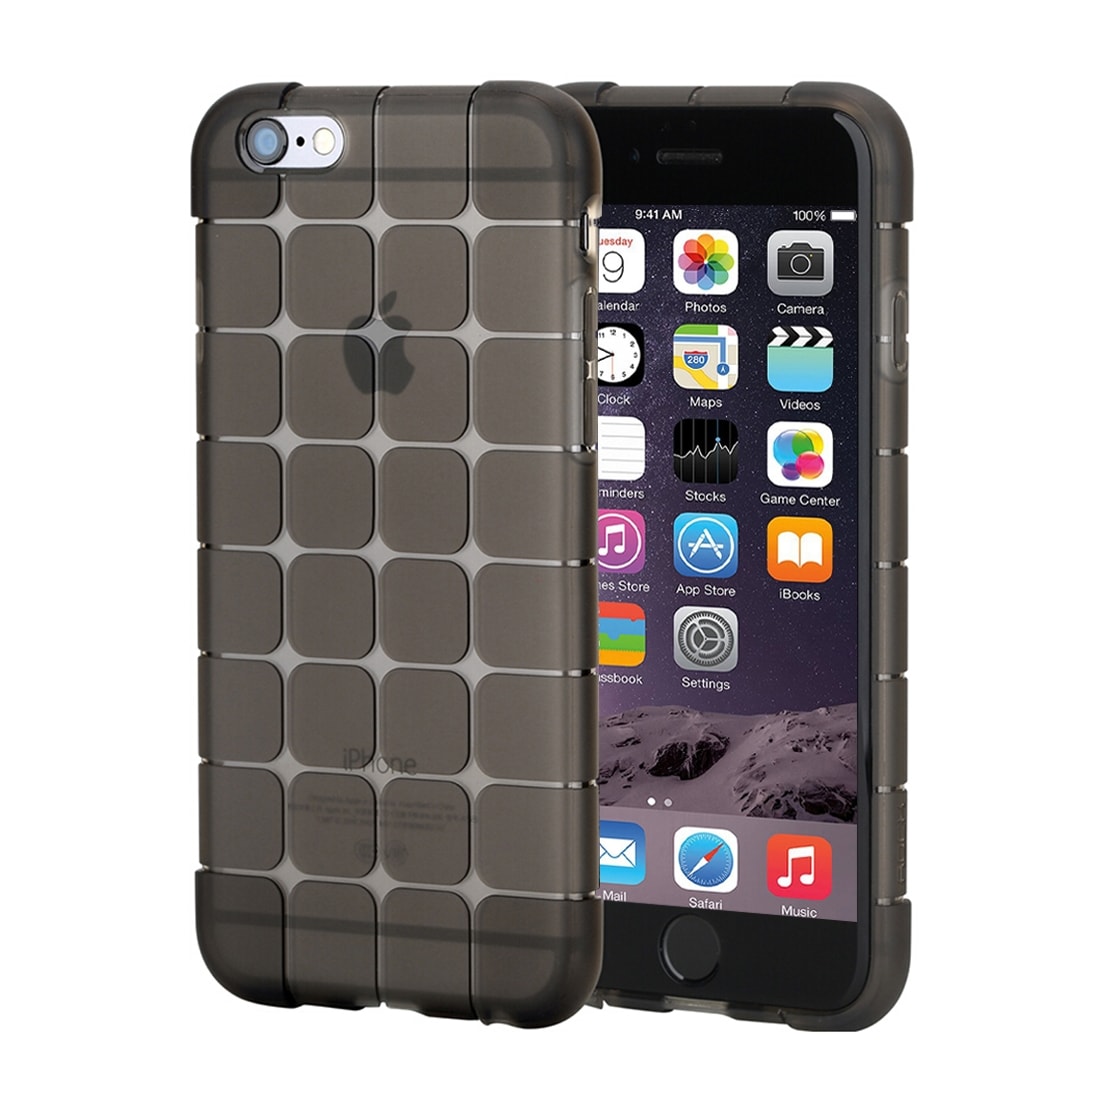 Rock Magic Cube Cover iPhone 6 Plus & 6s Plus - Sort